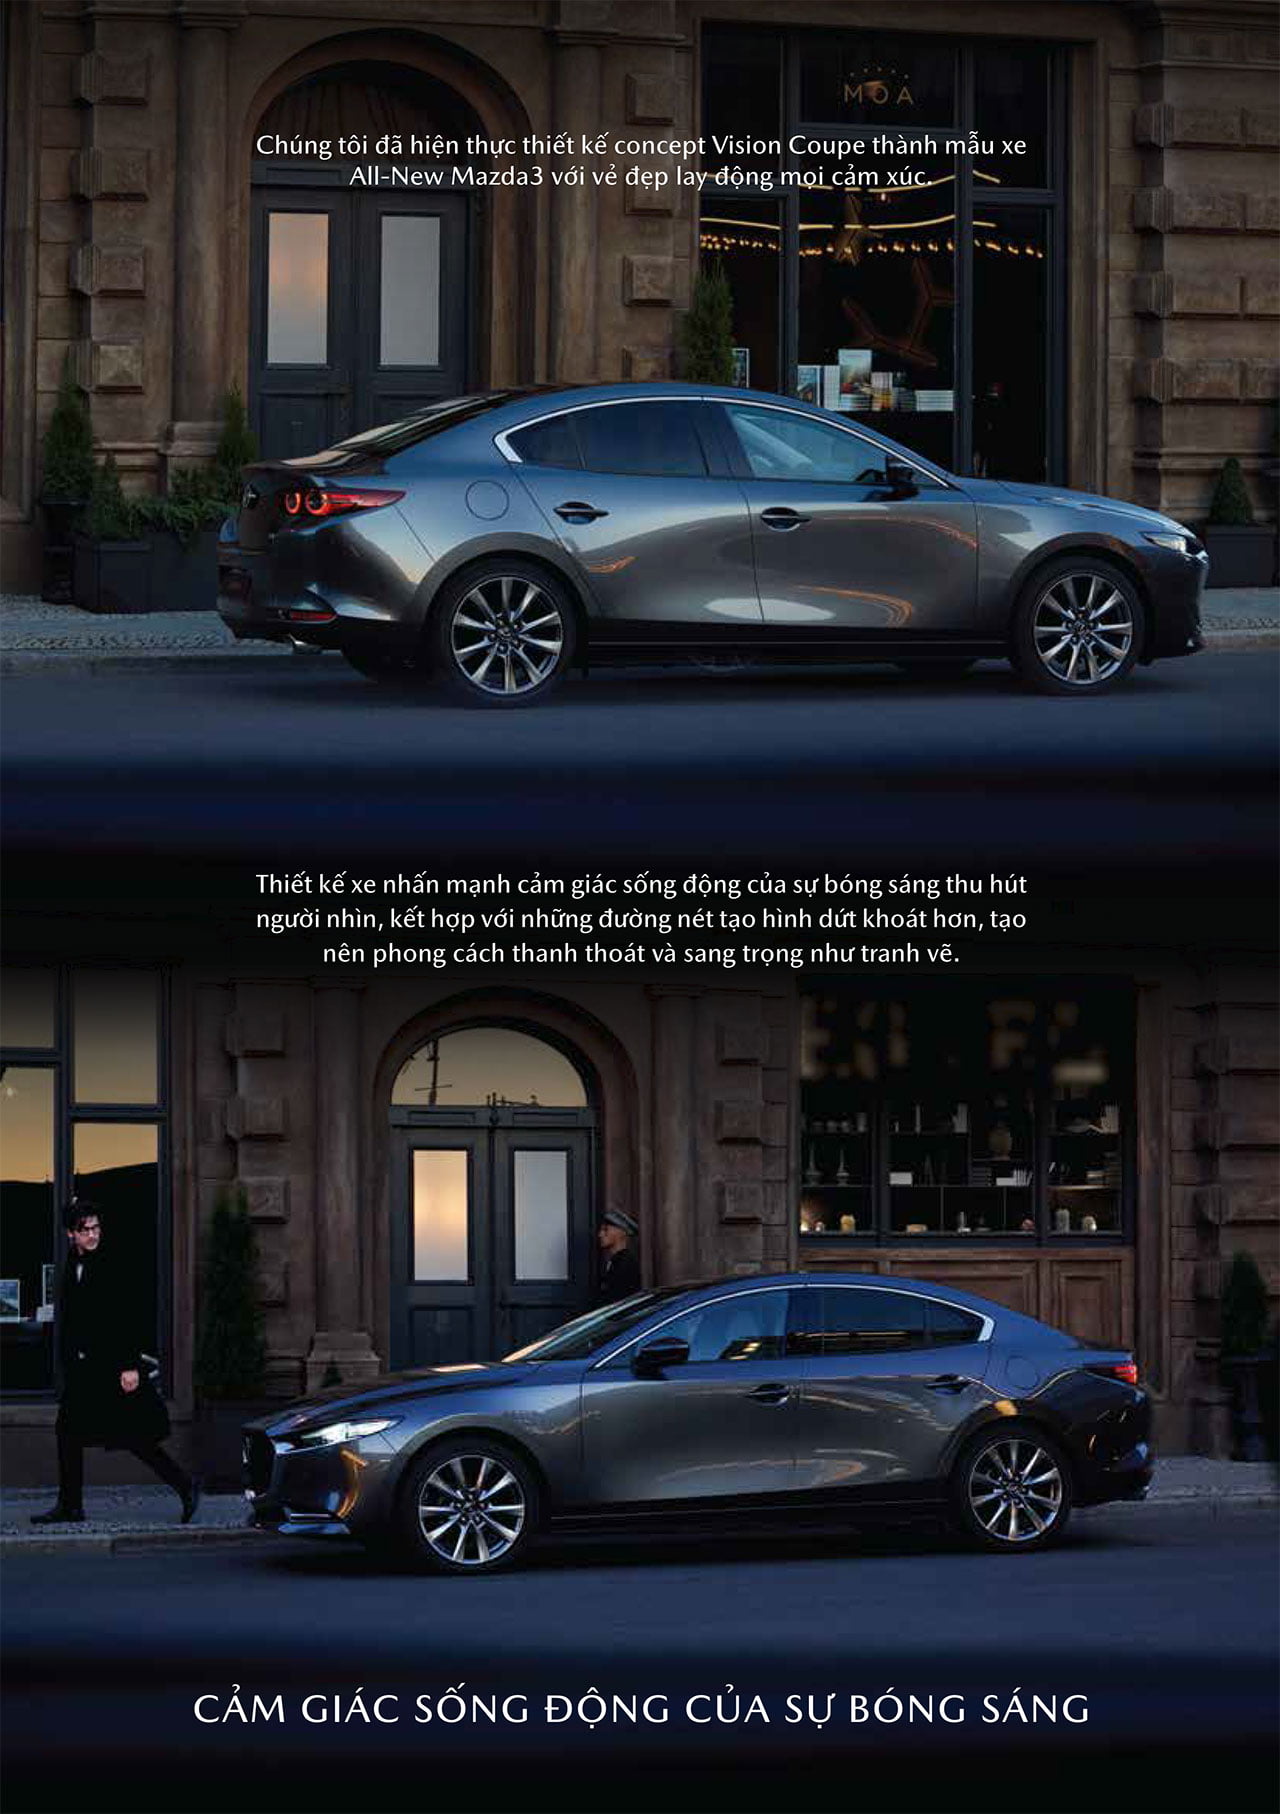 Mazda3 thế hệ mới sẽ khiến bạn ngạc nhiên với thiết kế sang trọng và đầy cá tính, kết hợp cùng các tính năng tiên tiến nhất hiện nay. Hãy cùng chiêm ngưỡng vẻ đẹp và sức mạnh của chiếc xe này trong những hình ảnh đầy sức thu hút.